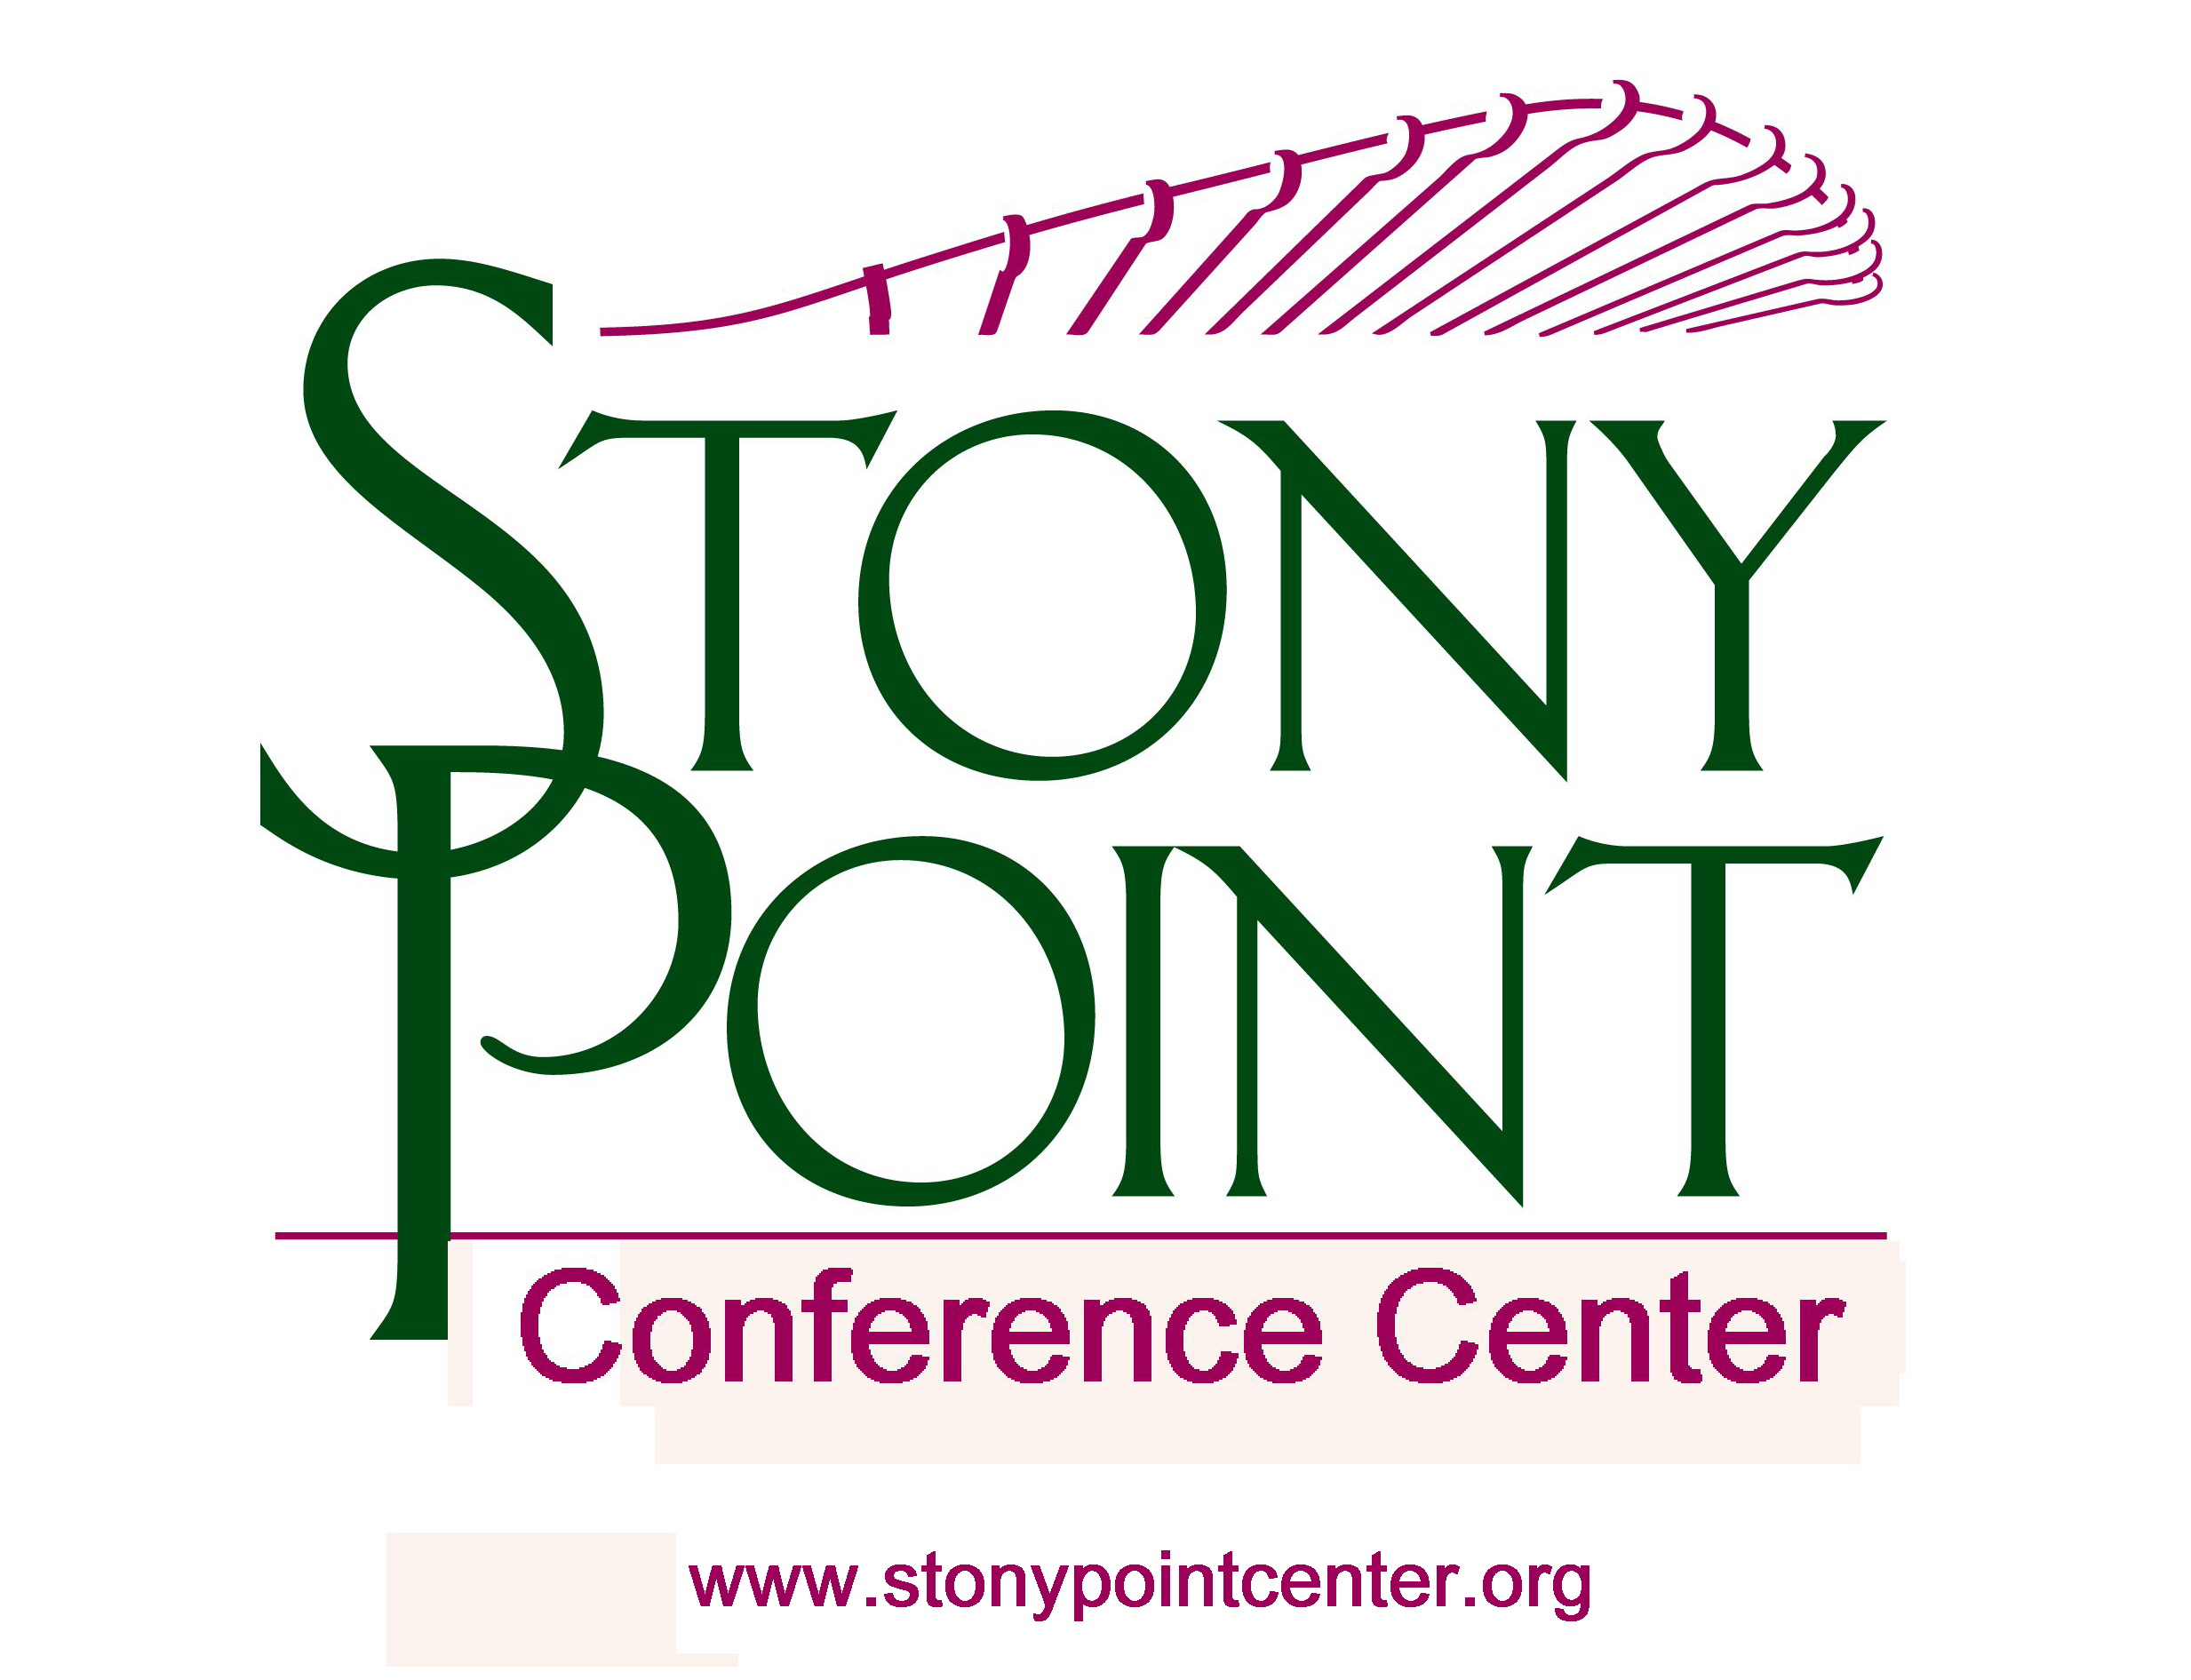 Stony Point Center